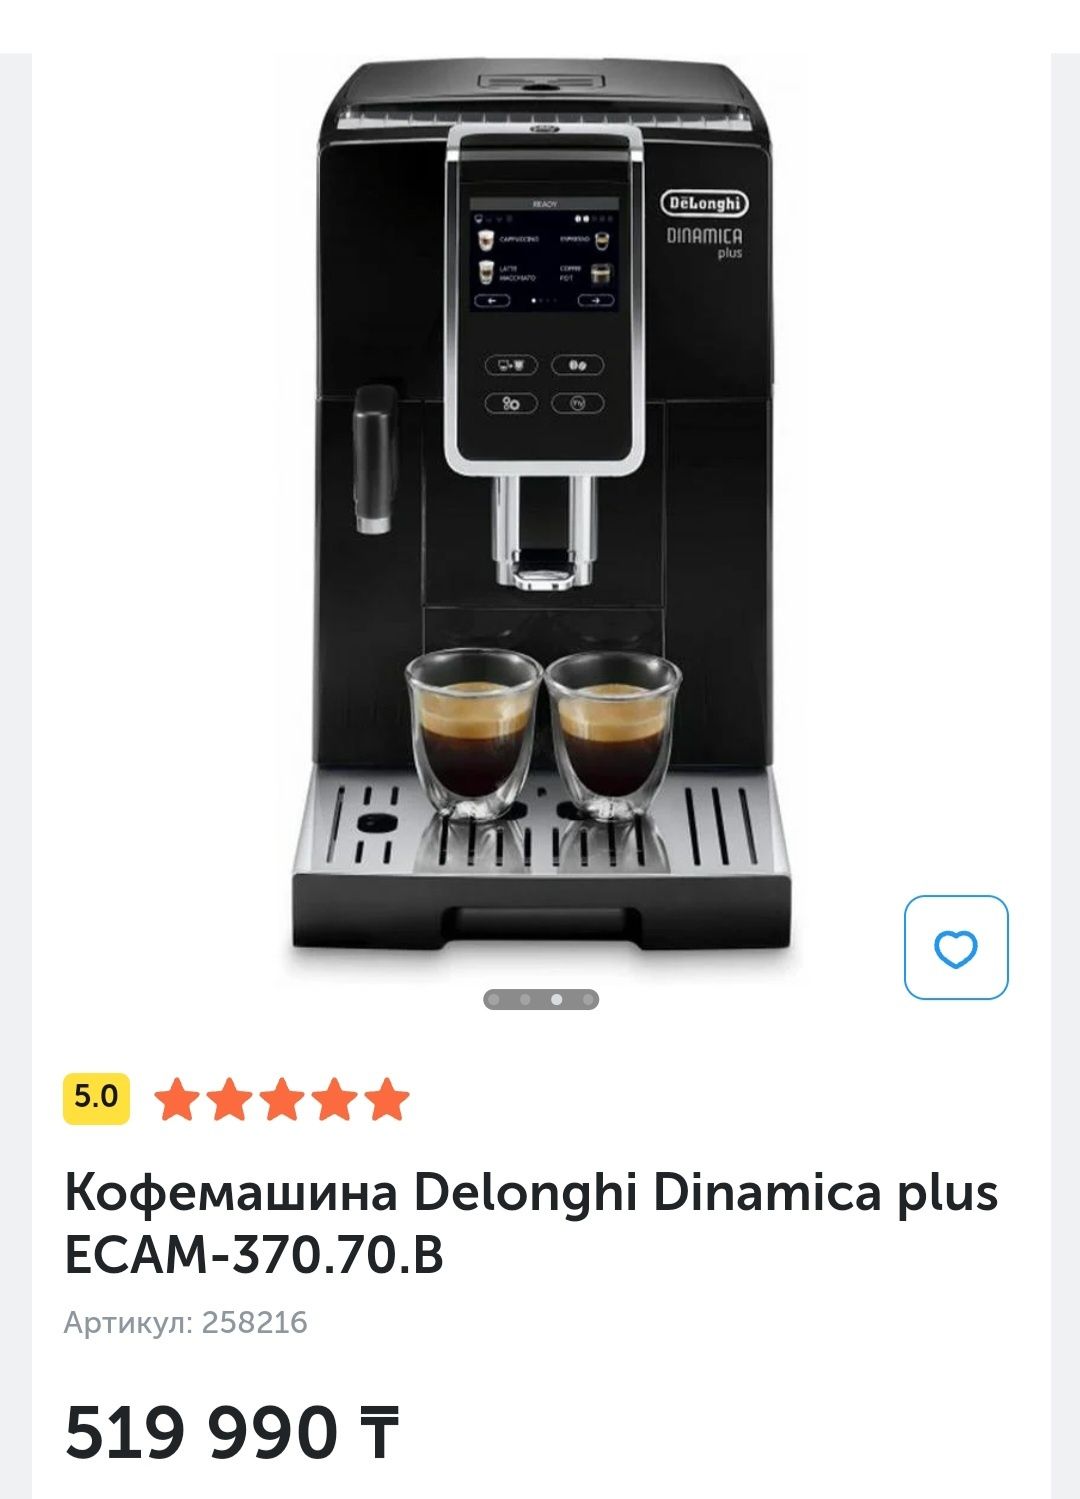 Продам кофемашину Delonghi Dinamica plus